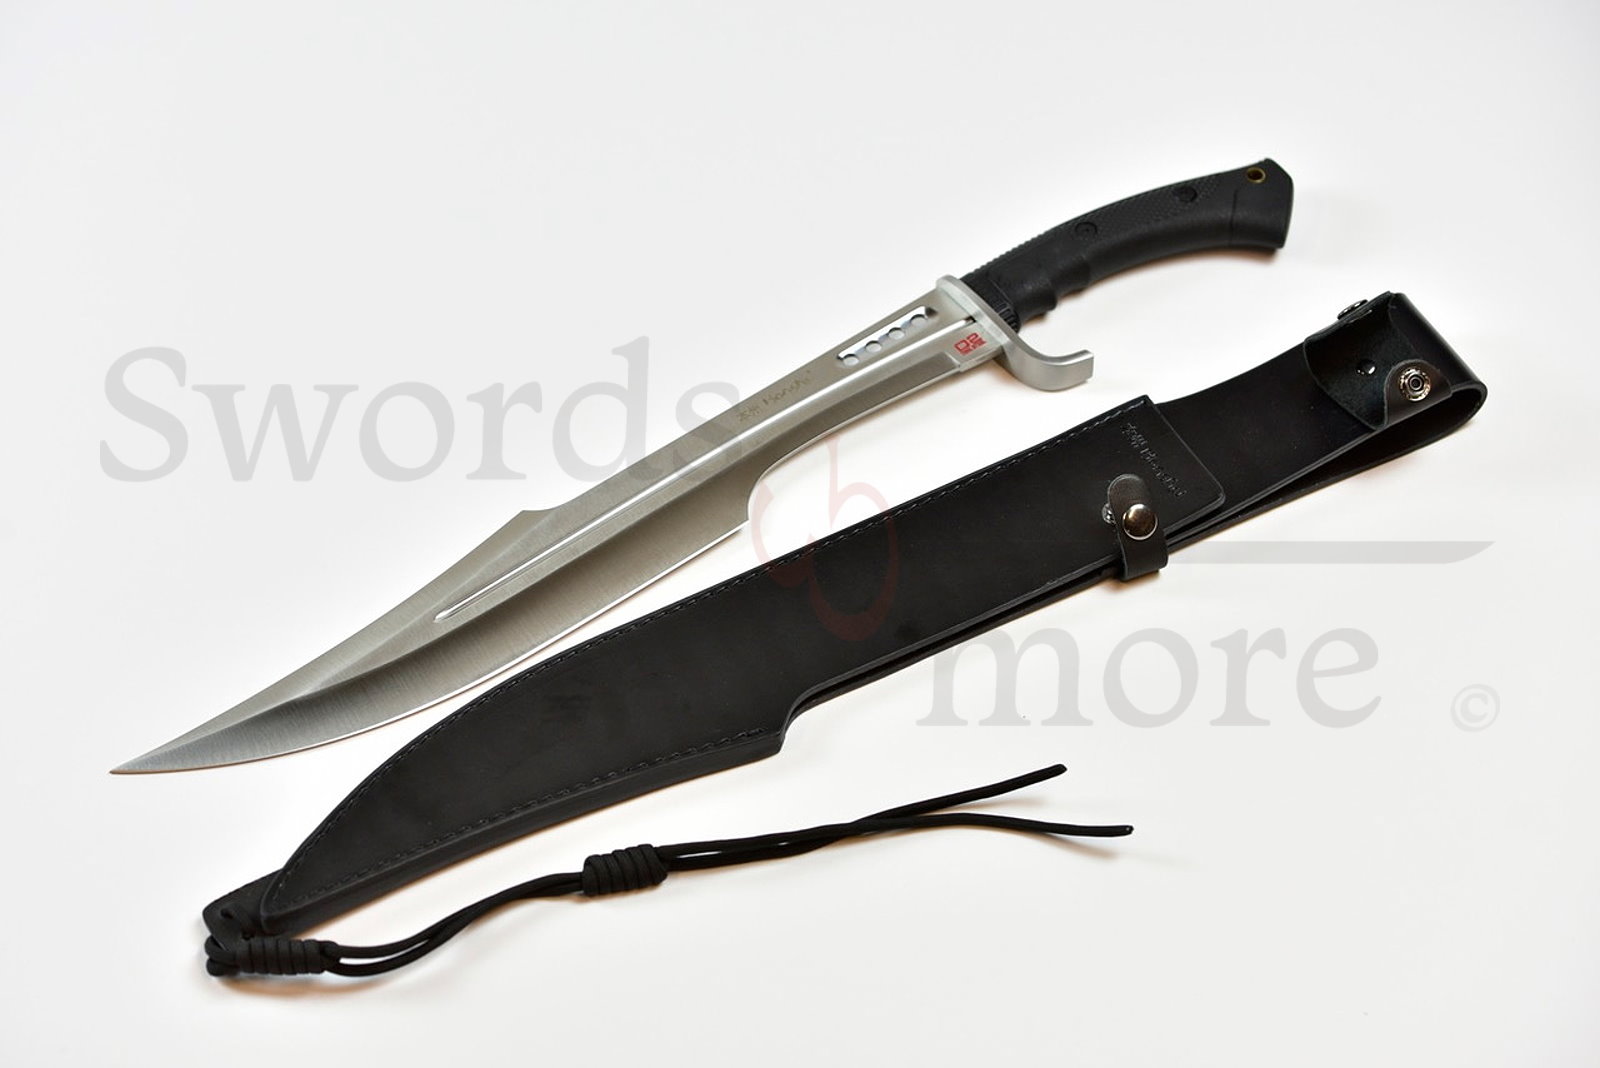 Honshu Spartan Sword with D2 Steel